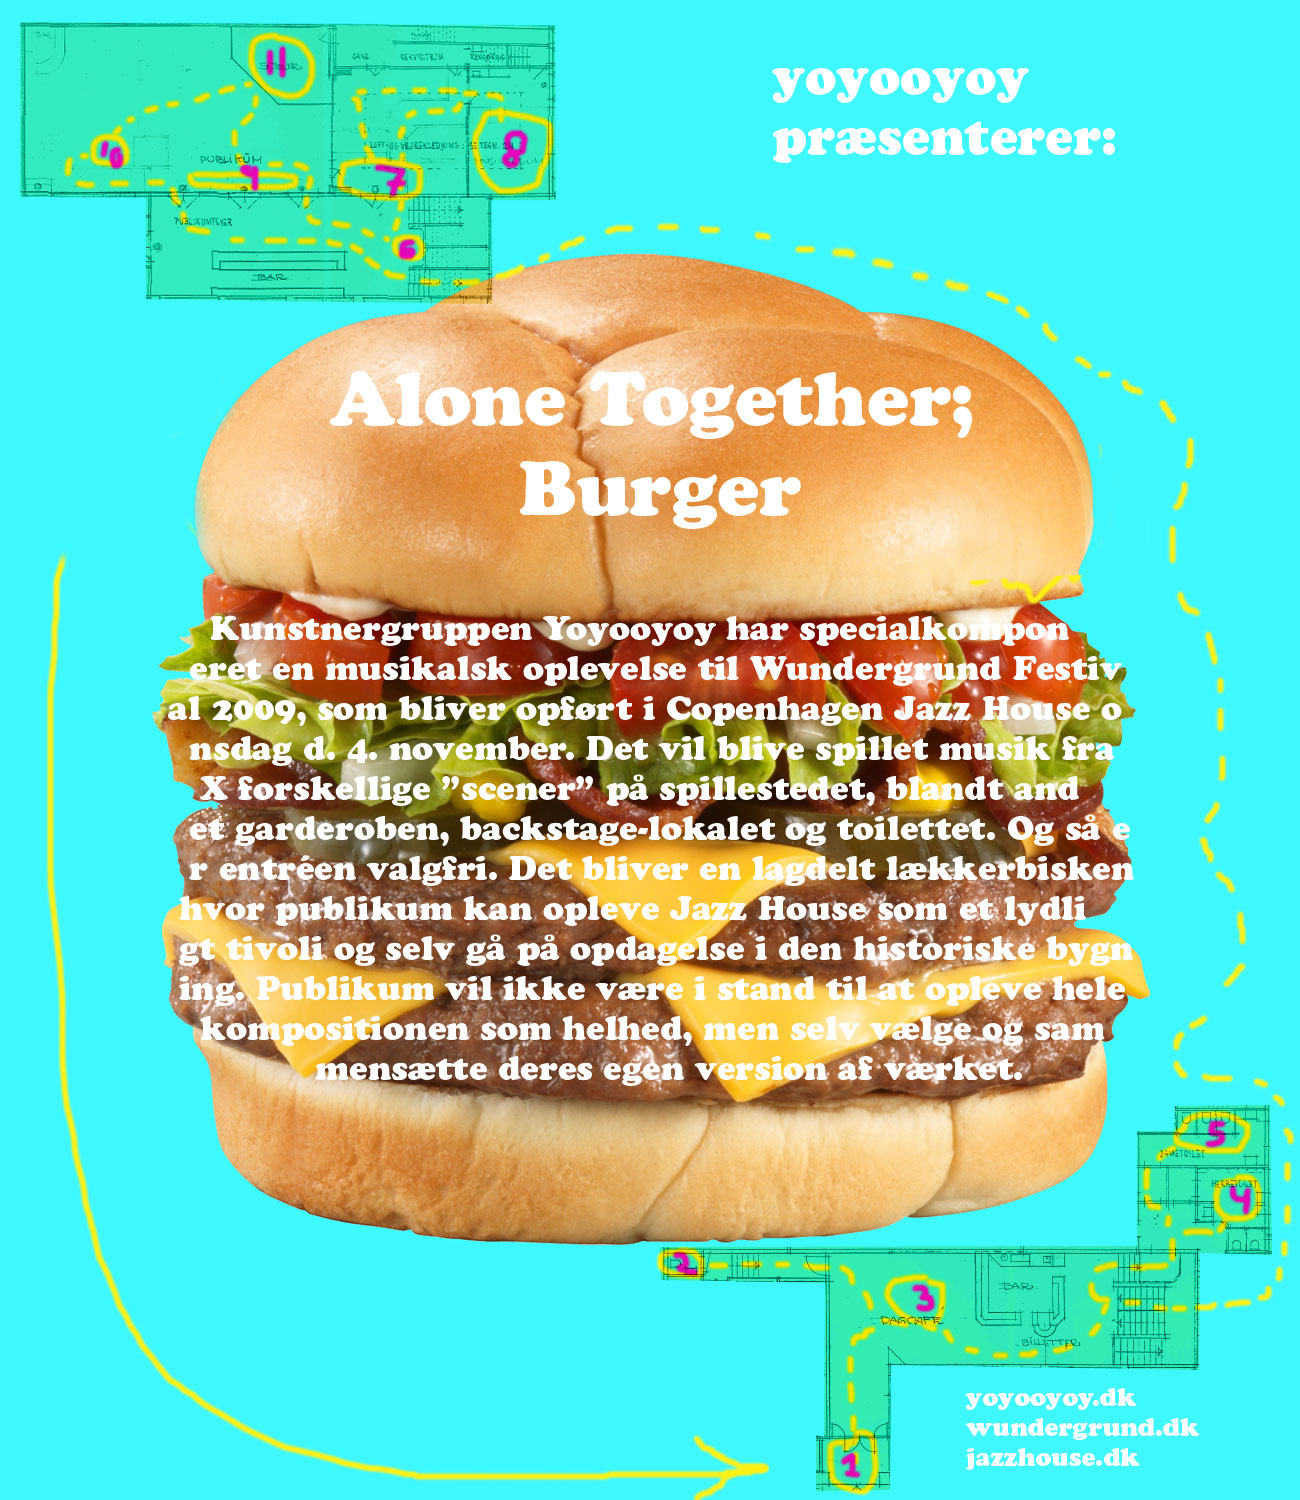 yoyooyoy alone together burger